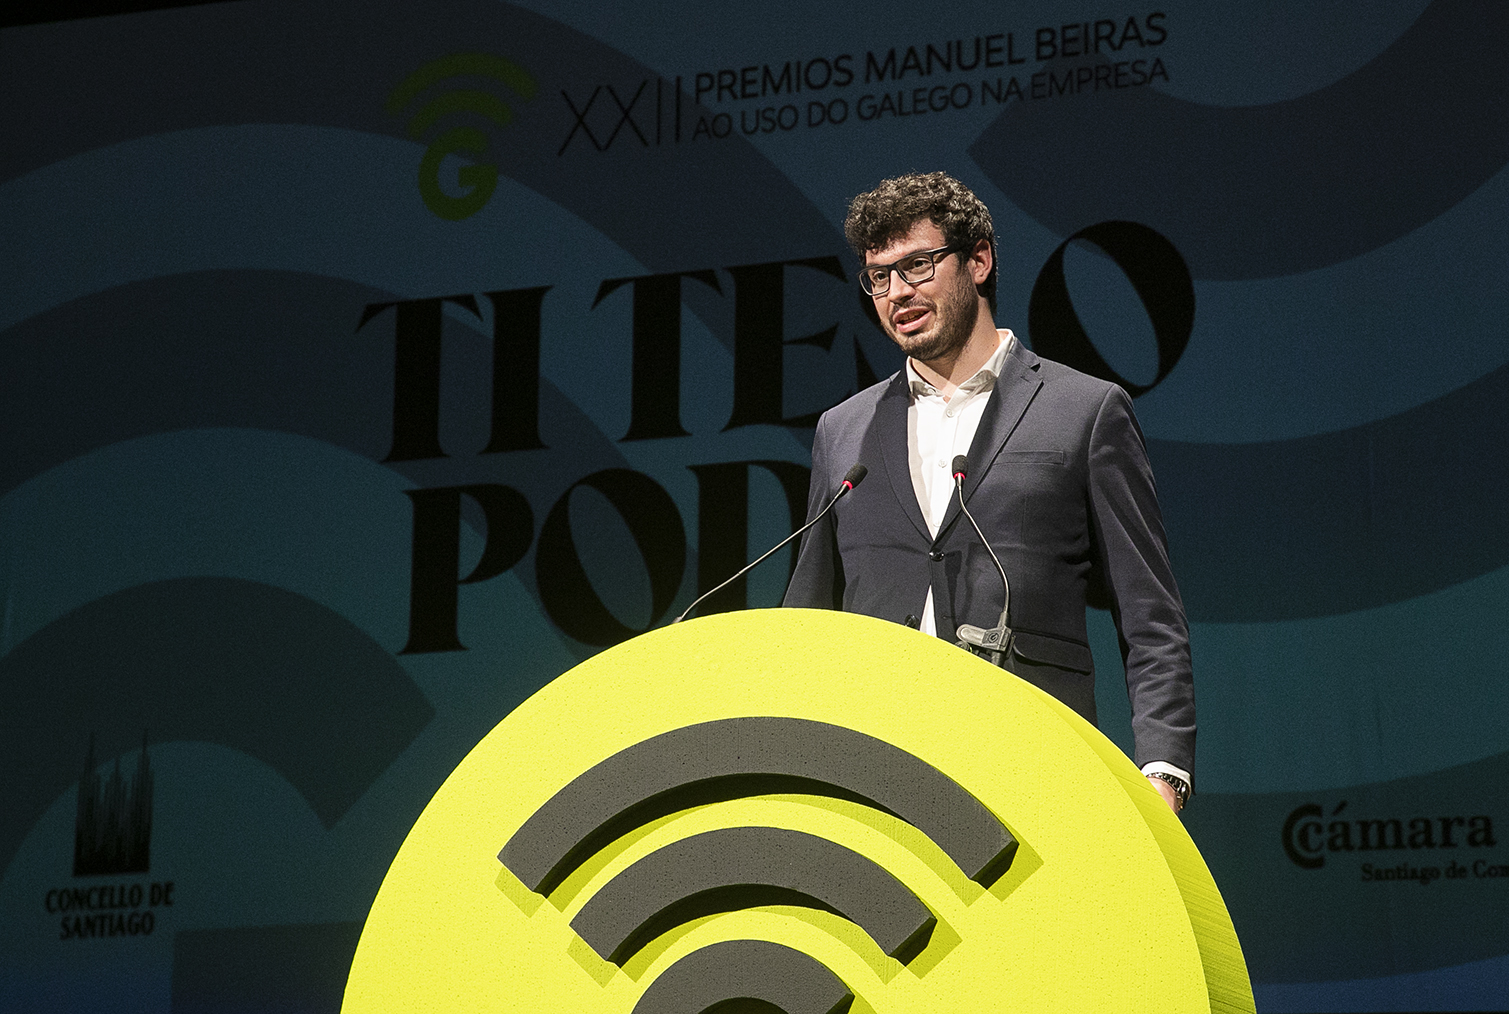 Rubén Prol na XXII edición dos premios Manuel Beiras